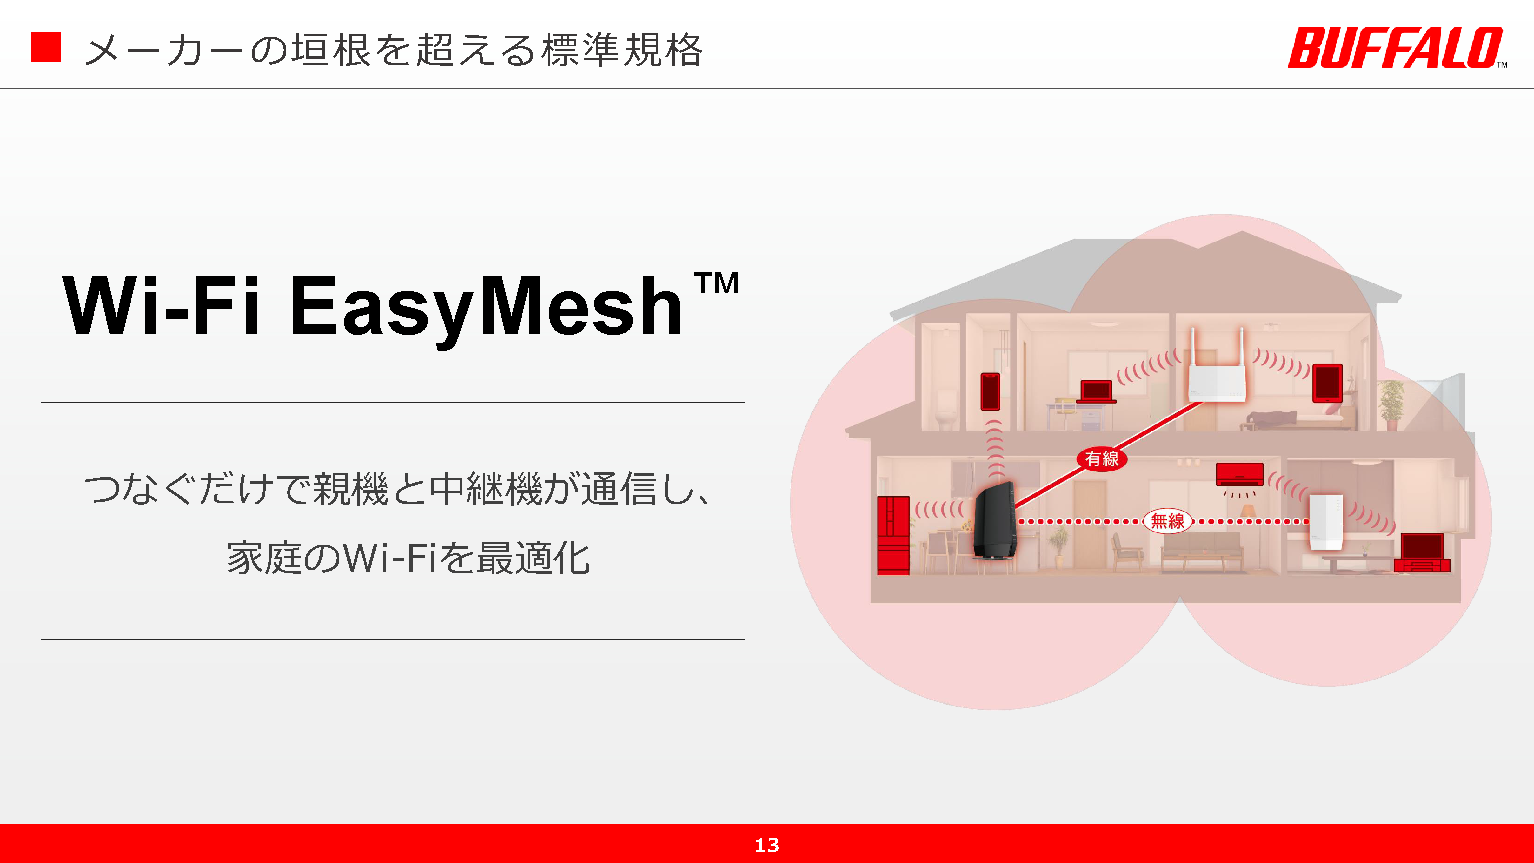 バッファロー、Wi-Fi 6対応ルーター・中継機全製品をWi-Fi EasyMeshに